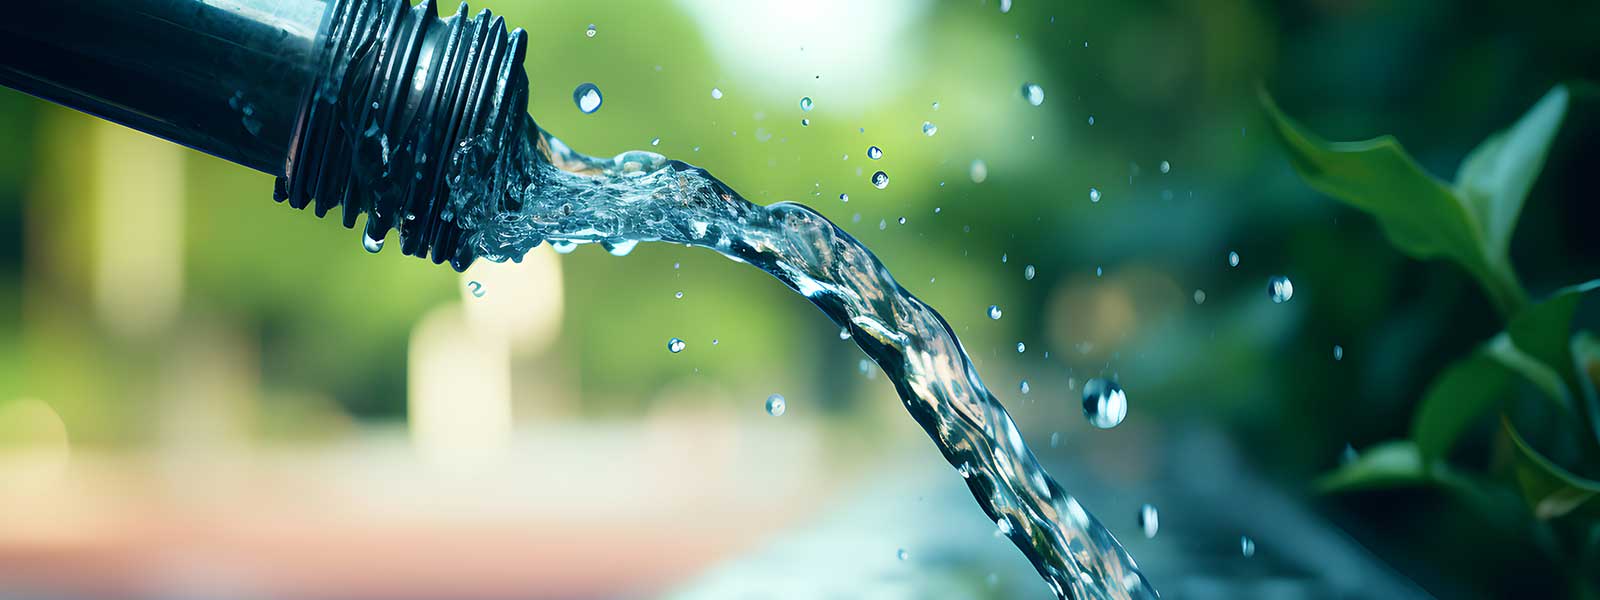 Affiner le suivi des consommations d’eau potable des abonnés de la métropole niçoise